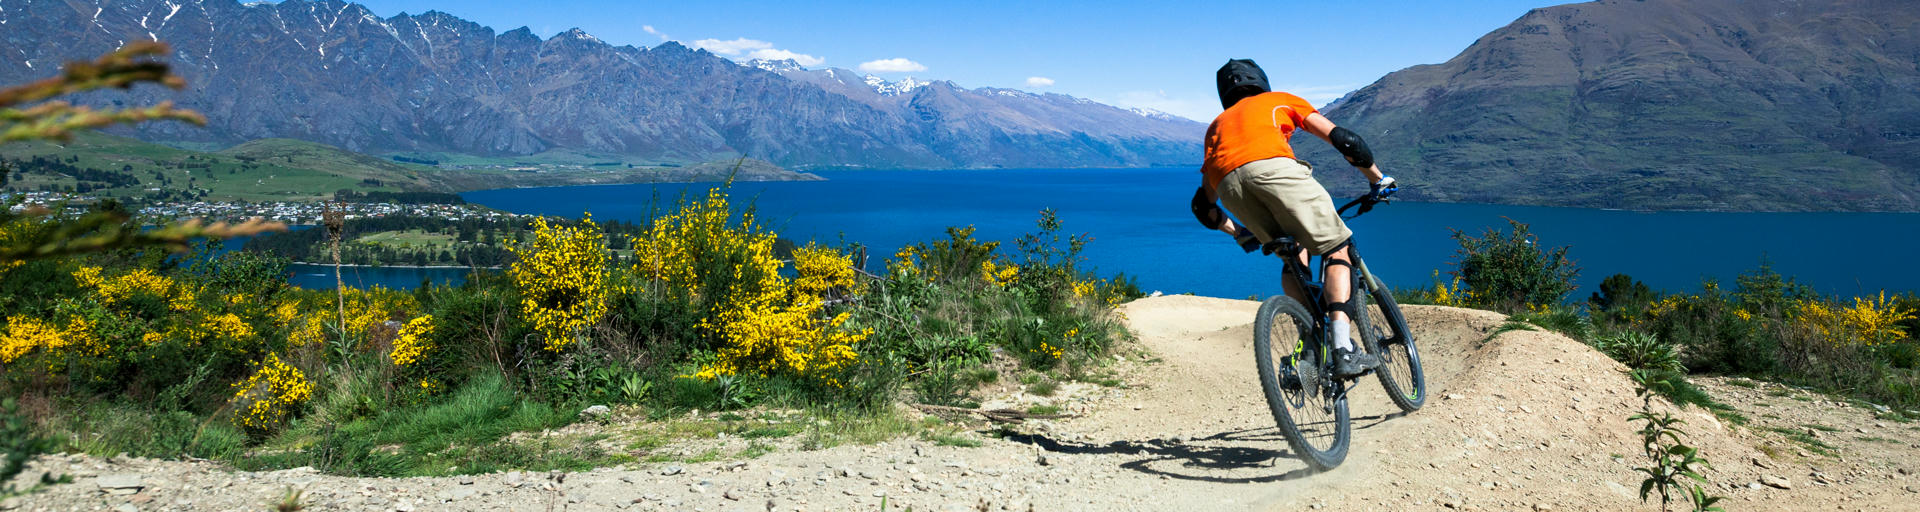 Mountainbiker auf einer Downhill-Strecke in NZ